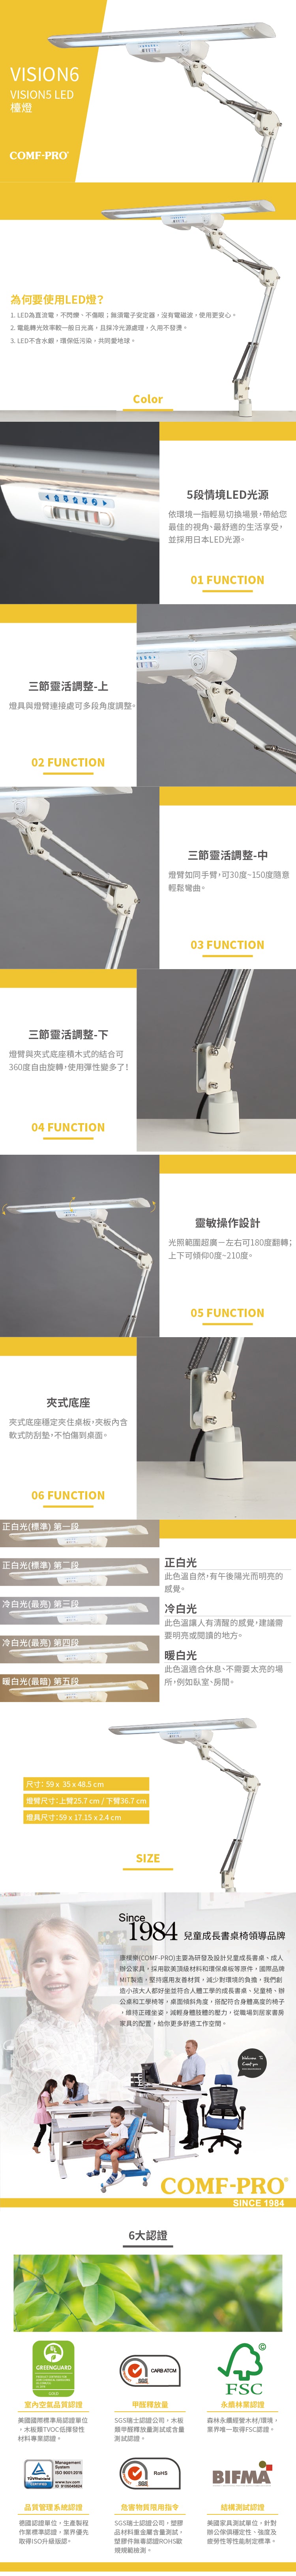 康樸樂 COMF-PRO 五段式 LED 護眼檯燈